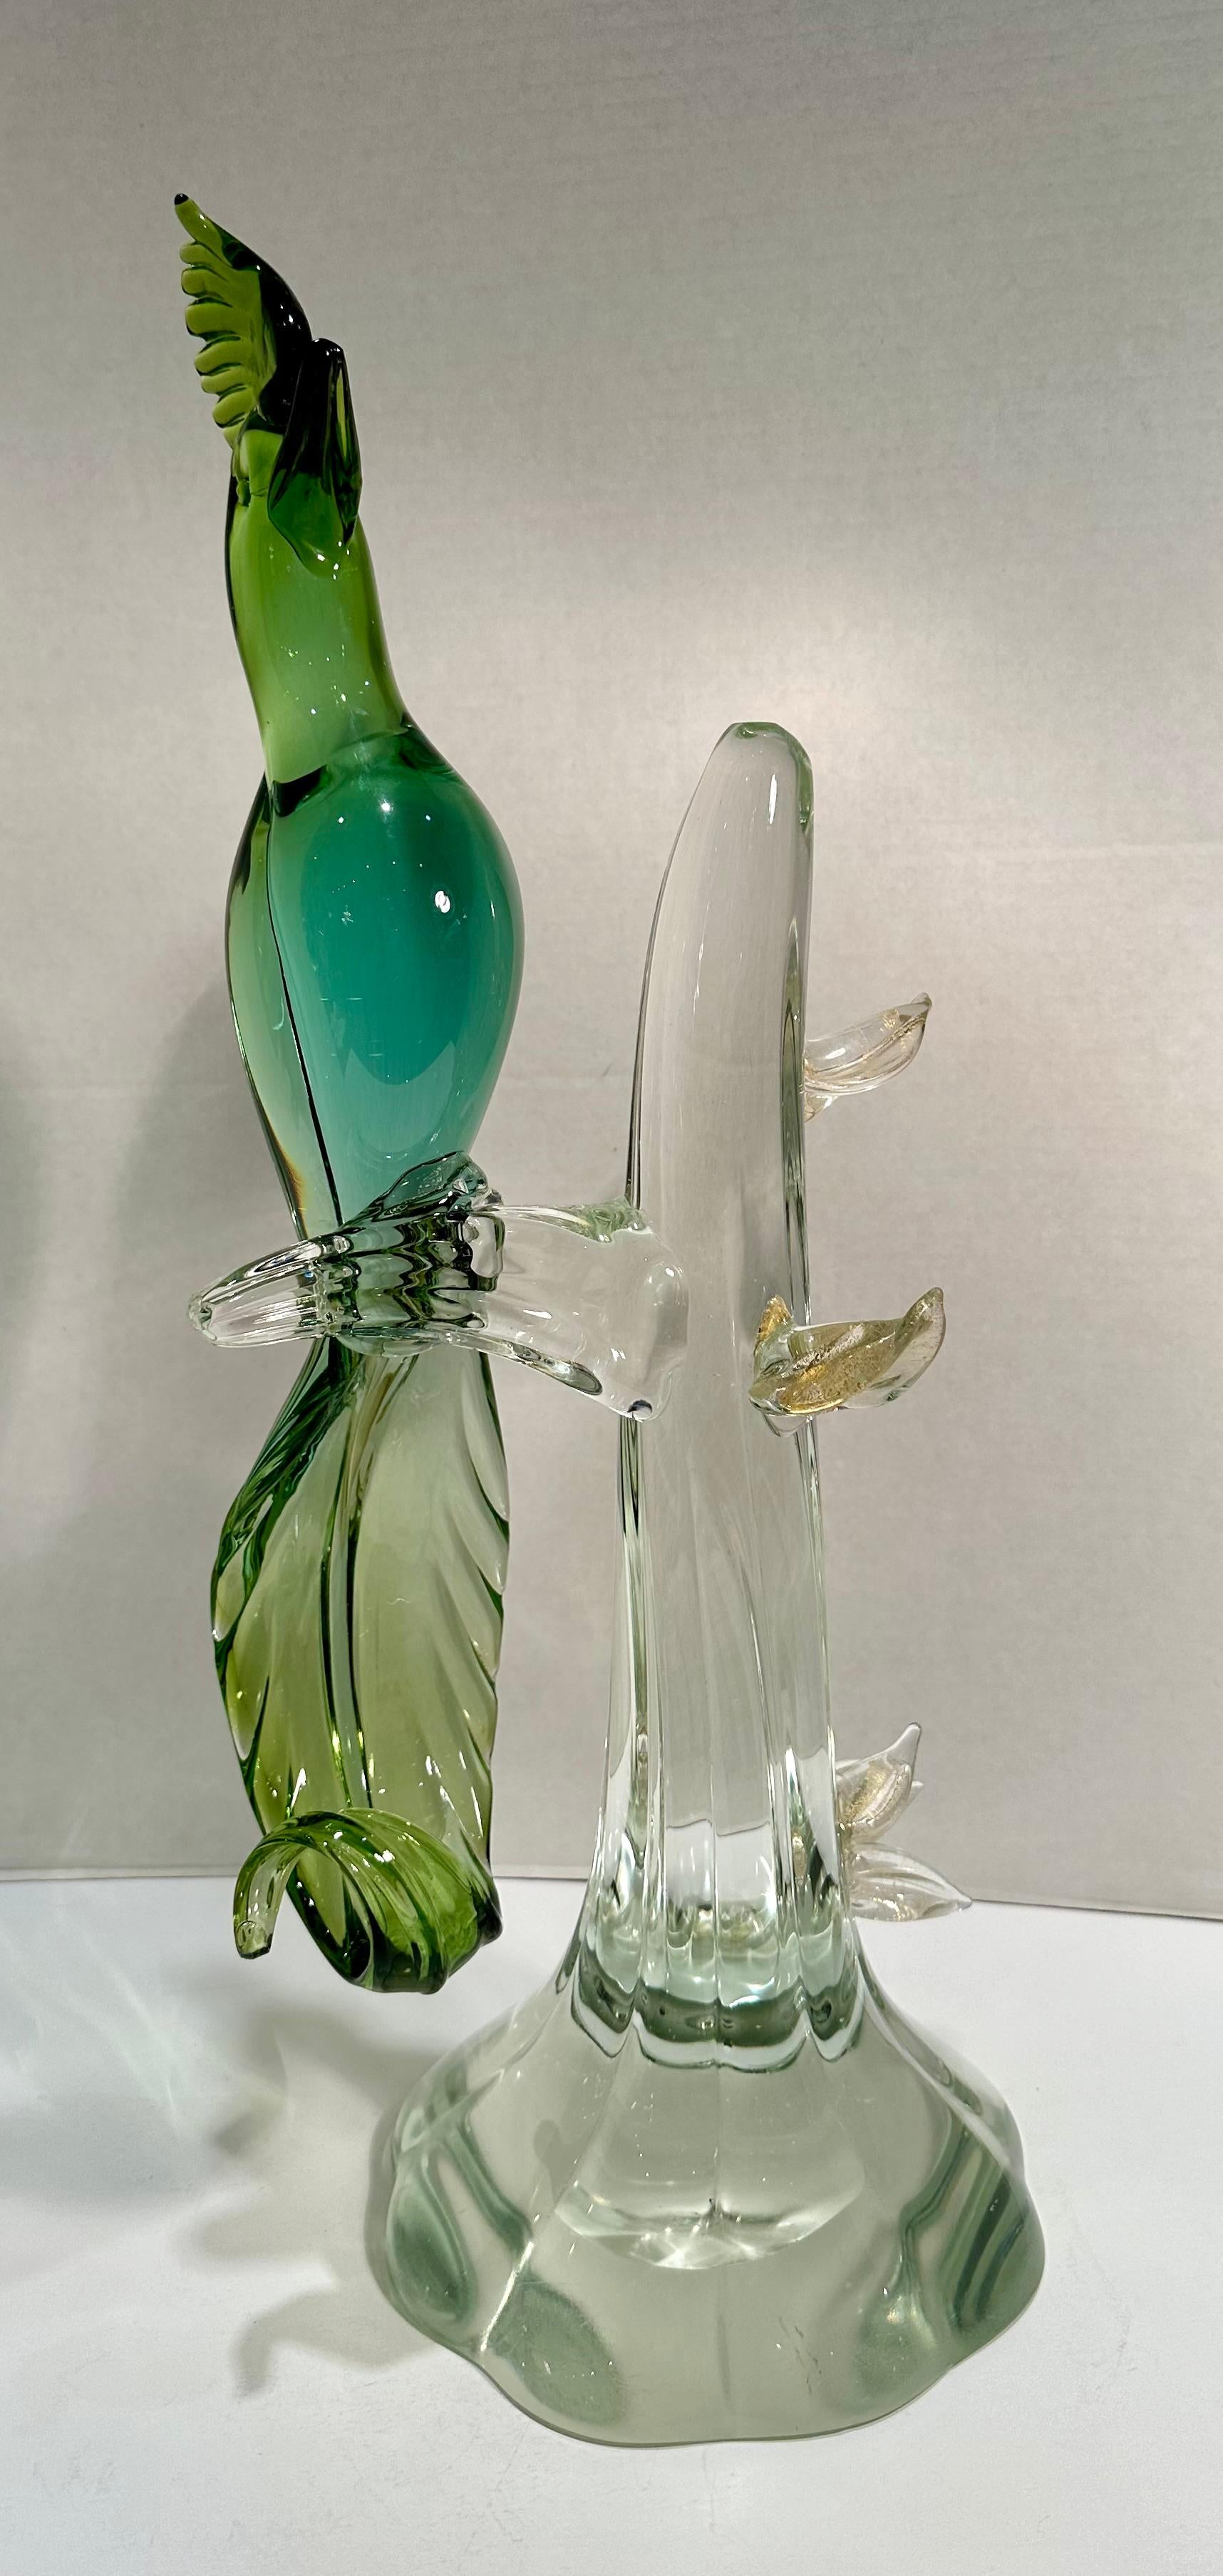 Prächtige große Salviati Murano Italien handgefertigte und mundgeblasene Glasfigur eines exotischen Vogels mit Federwedel und geschwungenem Schwanz. Die grüne Farbe am Kopf und in der Feder geht in einen smaragdgrünen Körper über, der im anmutig